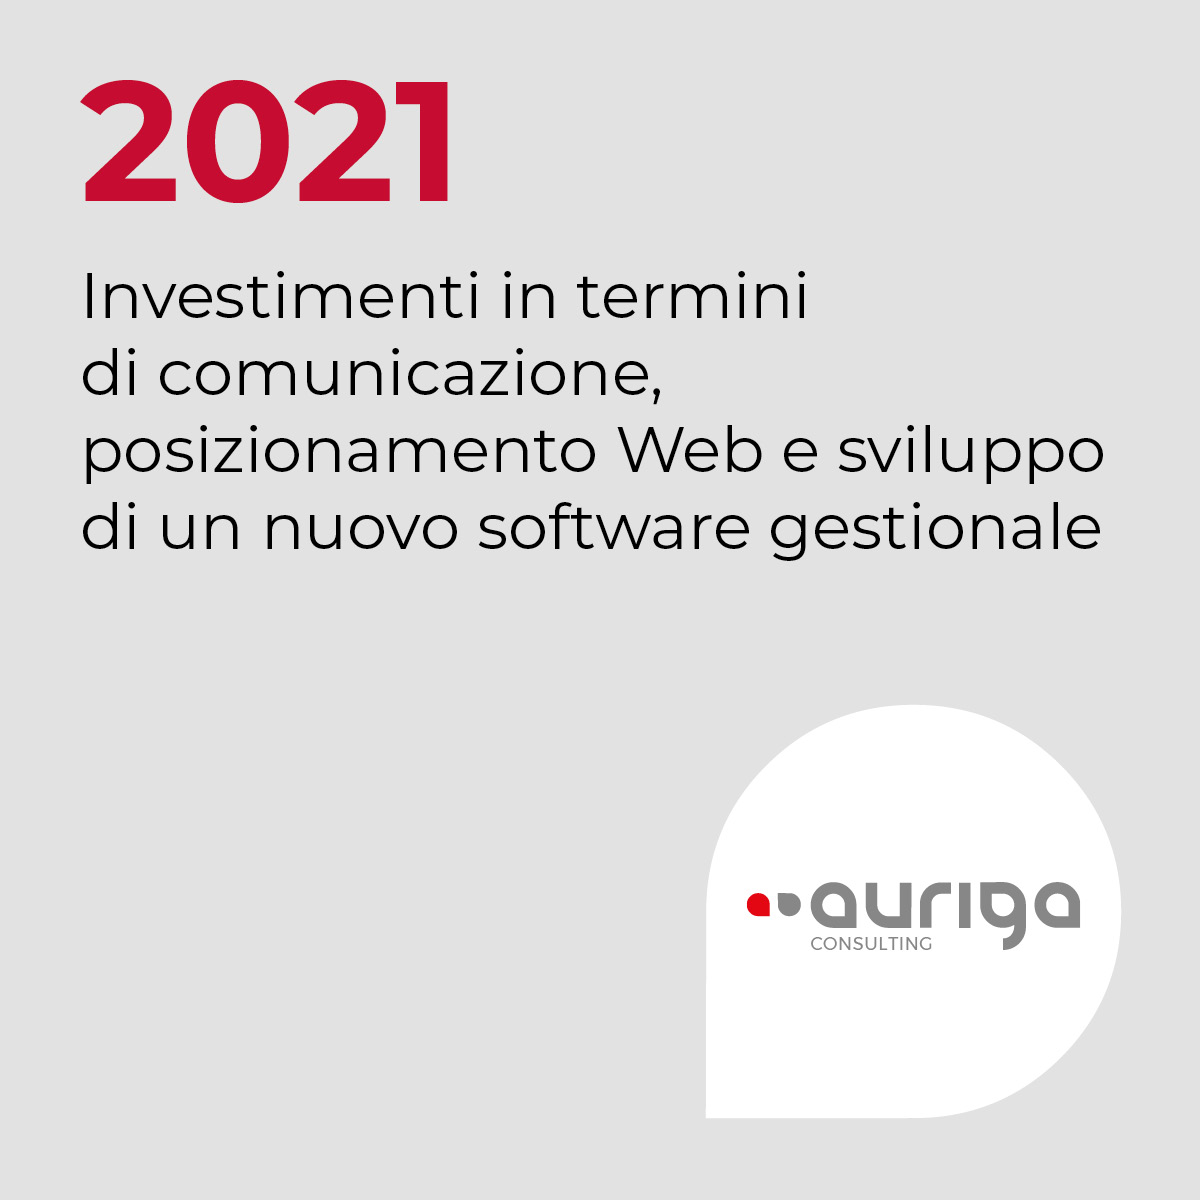 2021, Investimenti in termini di comunicazione, posizionamento Web e sviluppo di un nuovo software gestionale